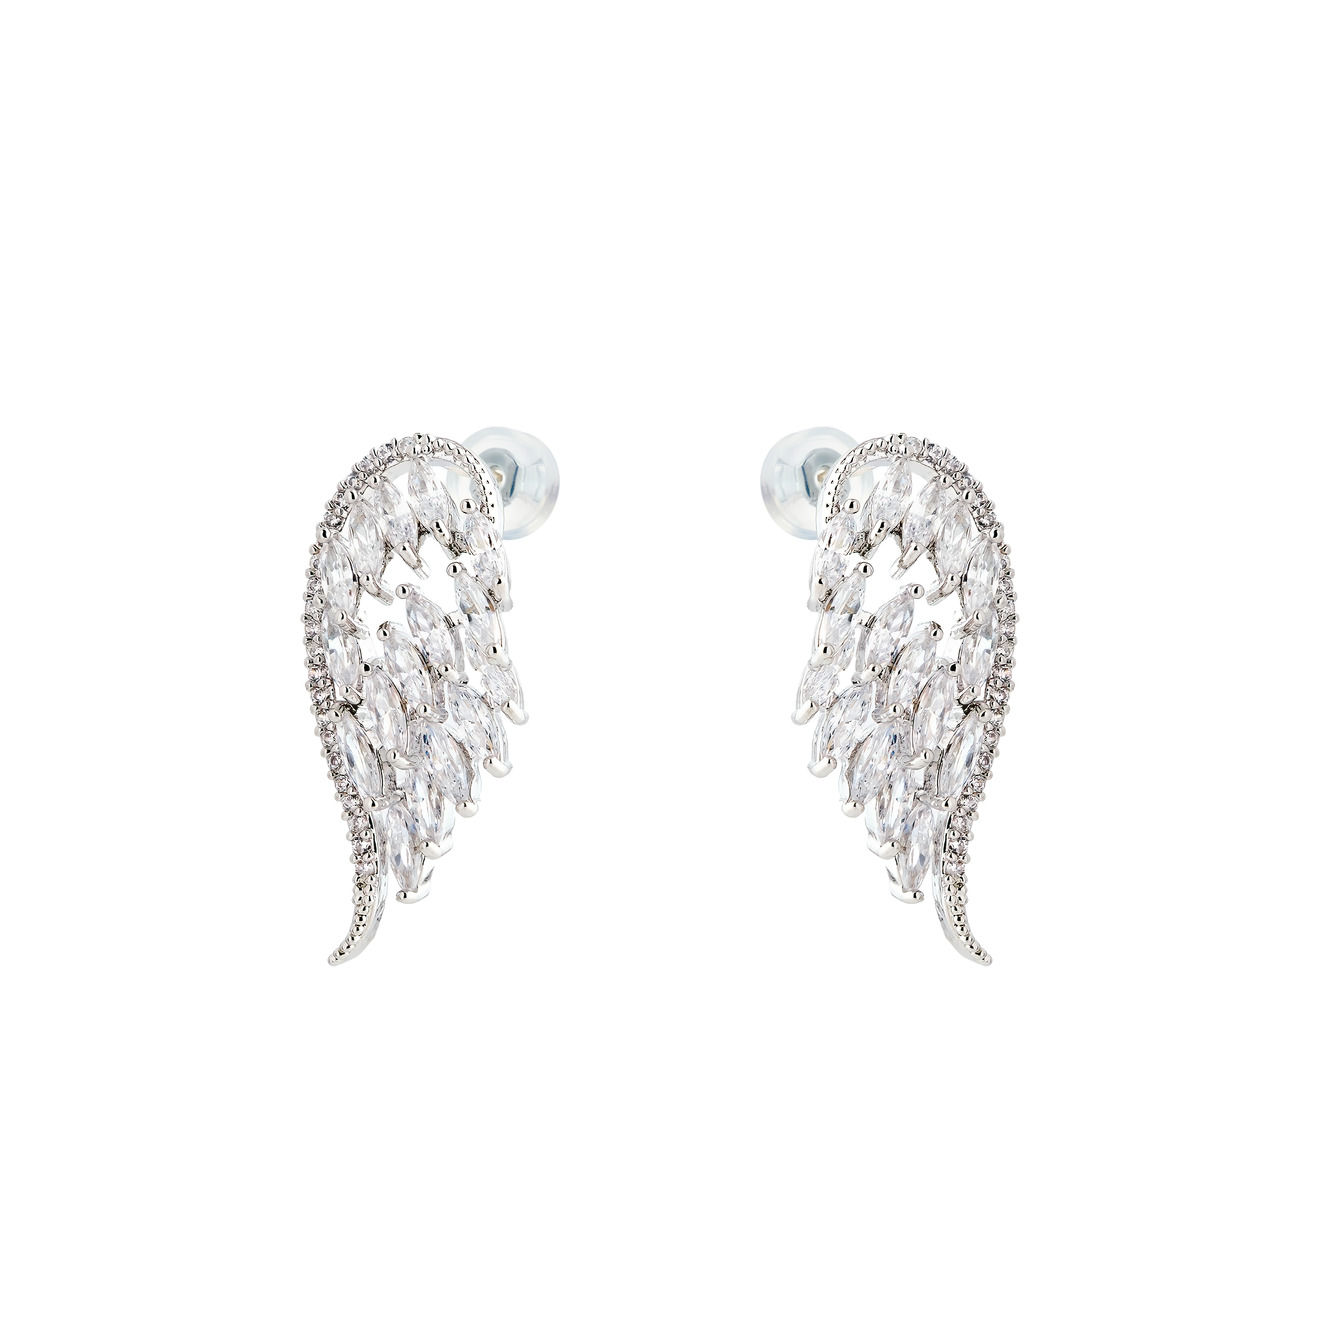 Herald Percy Серебристые маленькие серьги-крылья с кристаллами